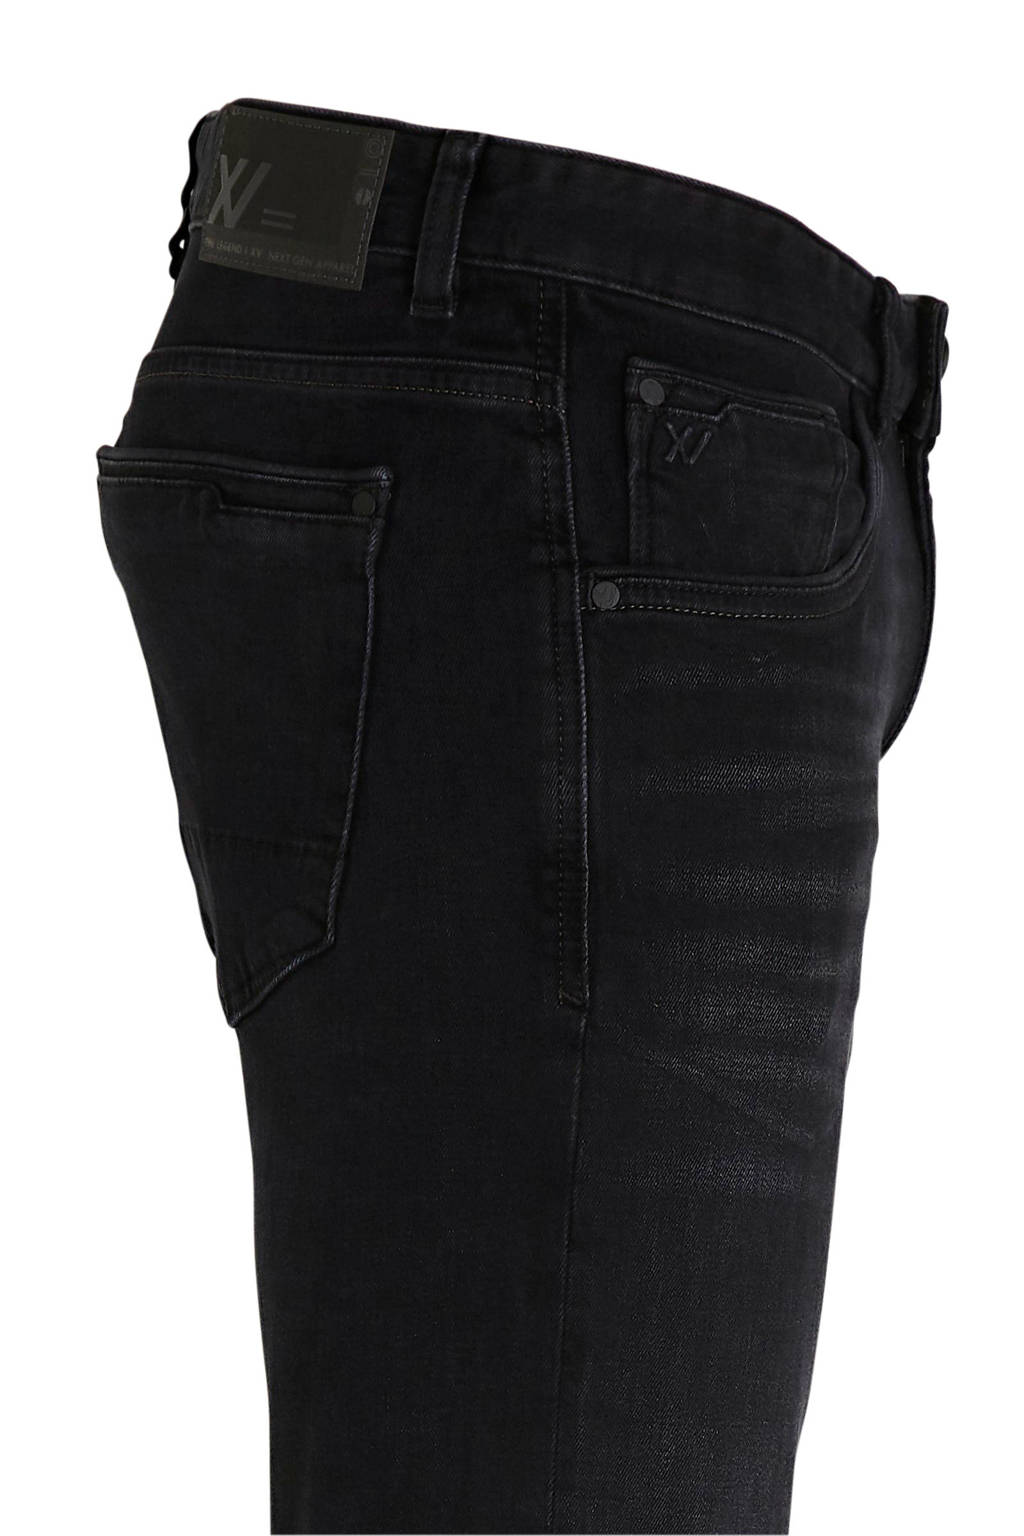 Vluchtig motto Draak PME Legend slim fit XV jeans zwart | wehkamp